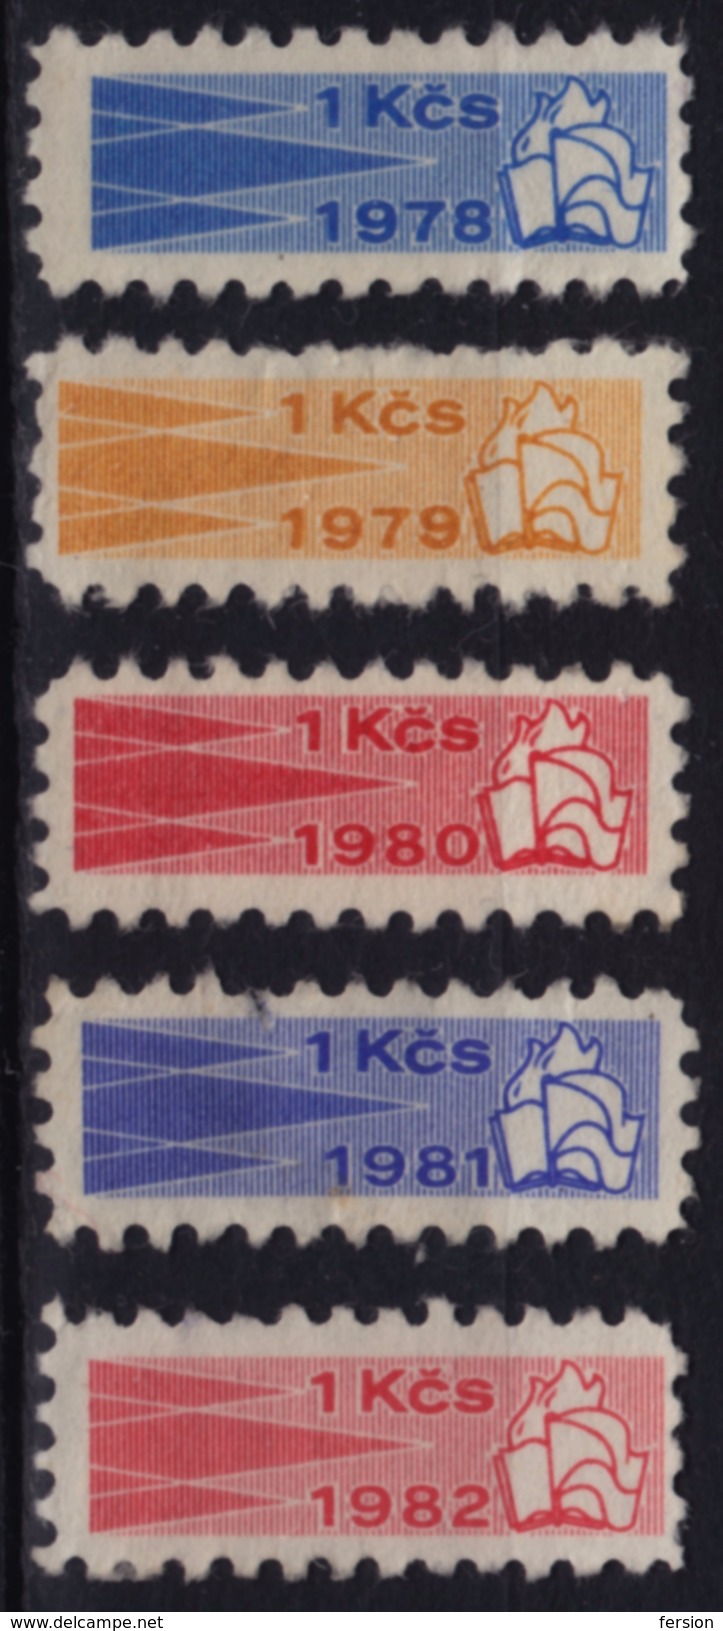 Kontrolní Znamka Controll Member Stamp 1978 1979 1980 1981 1982 Czechoslovakia Label Cinderella Vignette FLAG BOKK FLAME - Dienstzegels